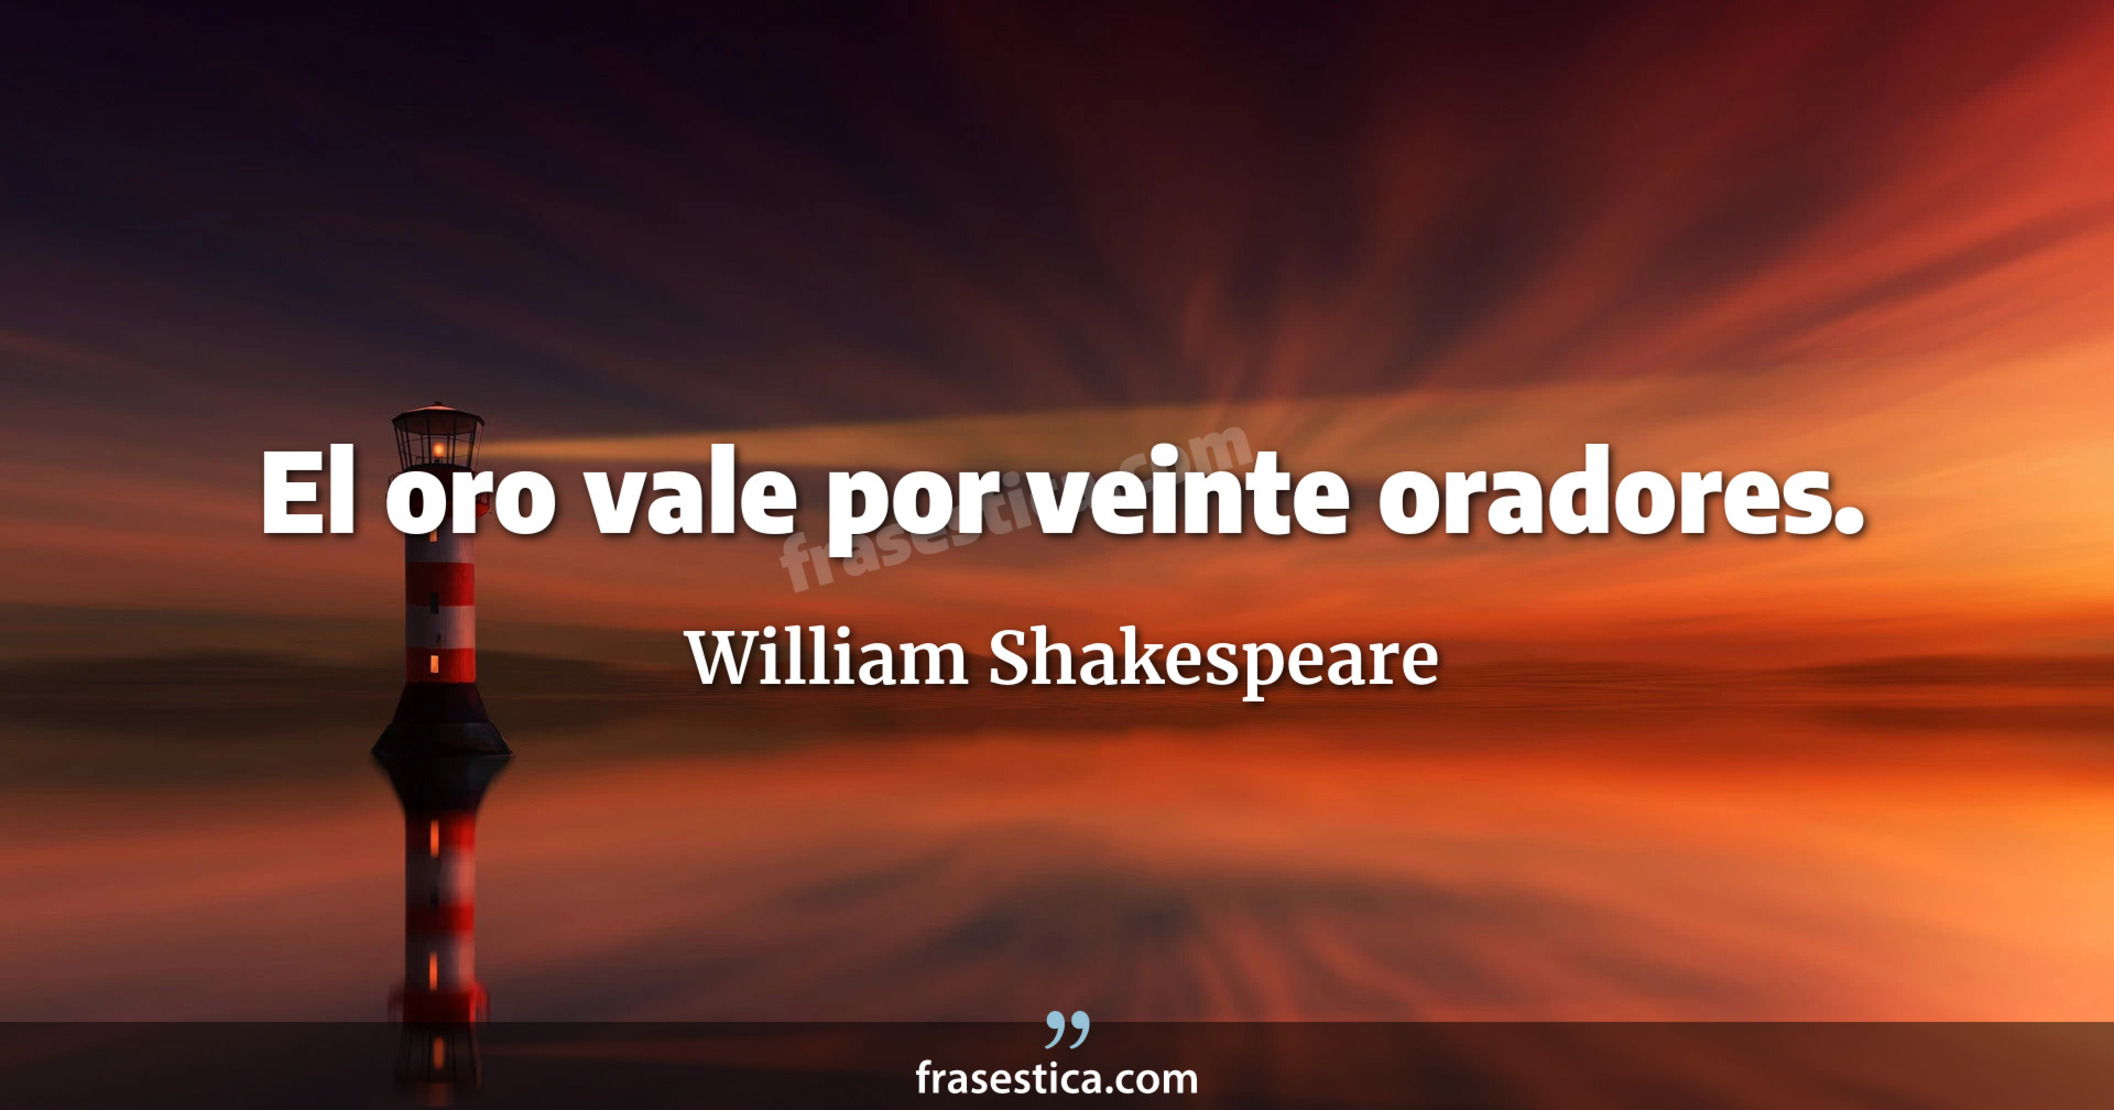 El oro vale por veinte oradores. - William Shakespeare